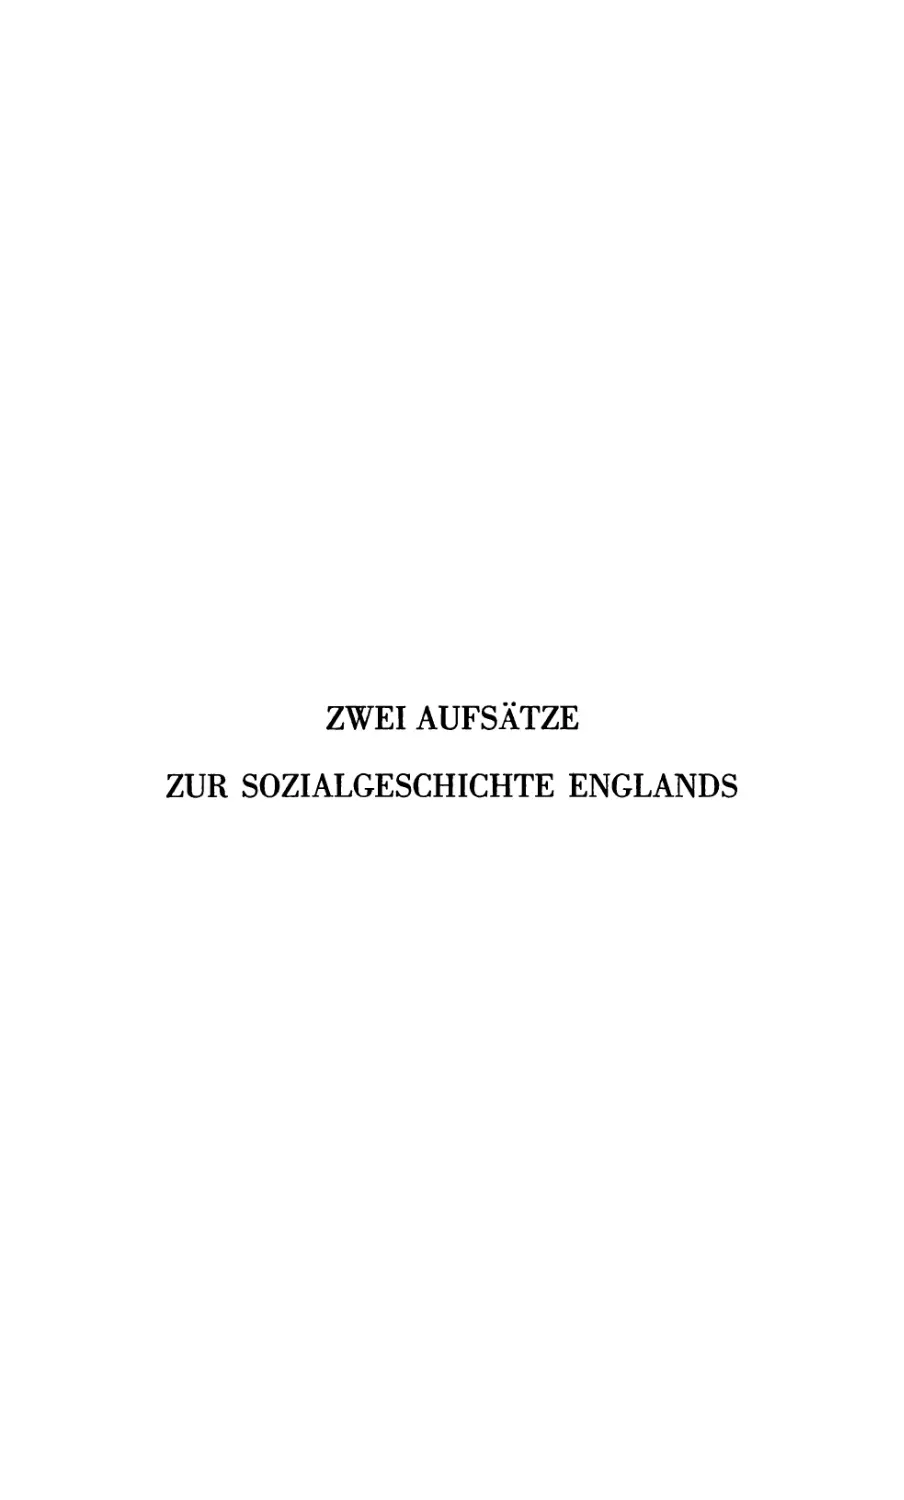 Zwei Aufsätze zur Sozialgeschichte Englands